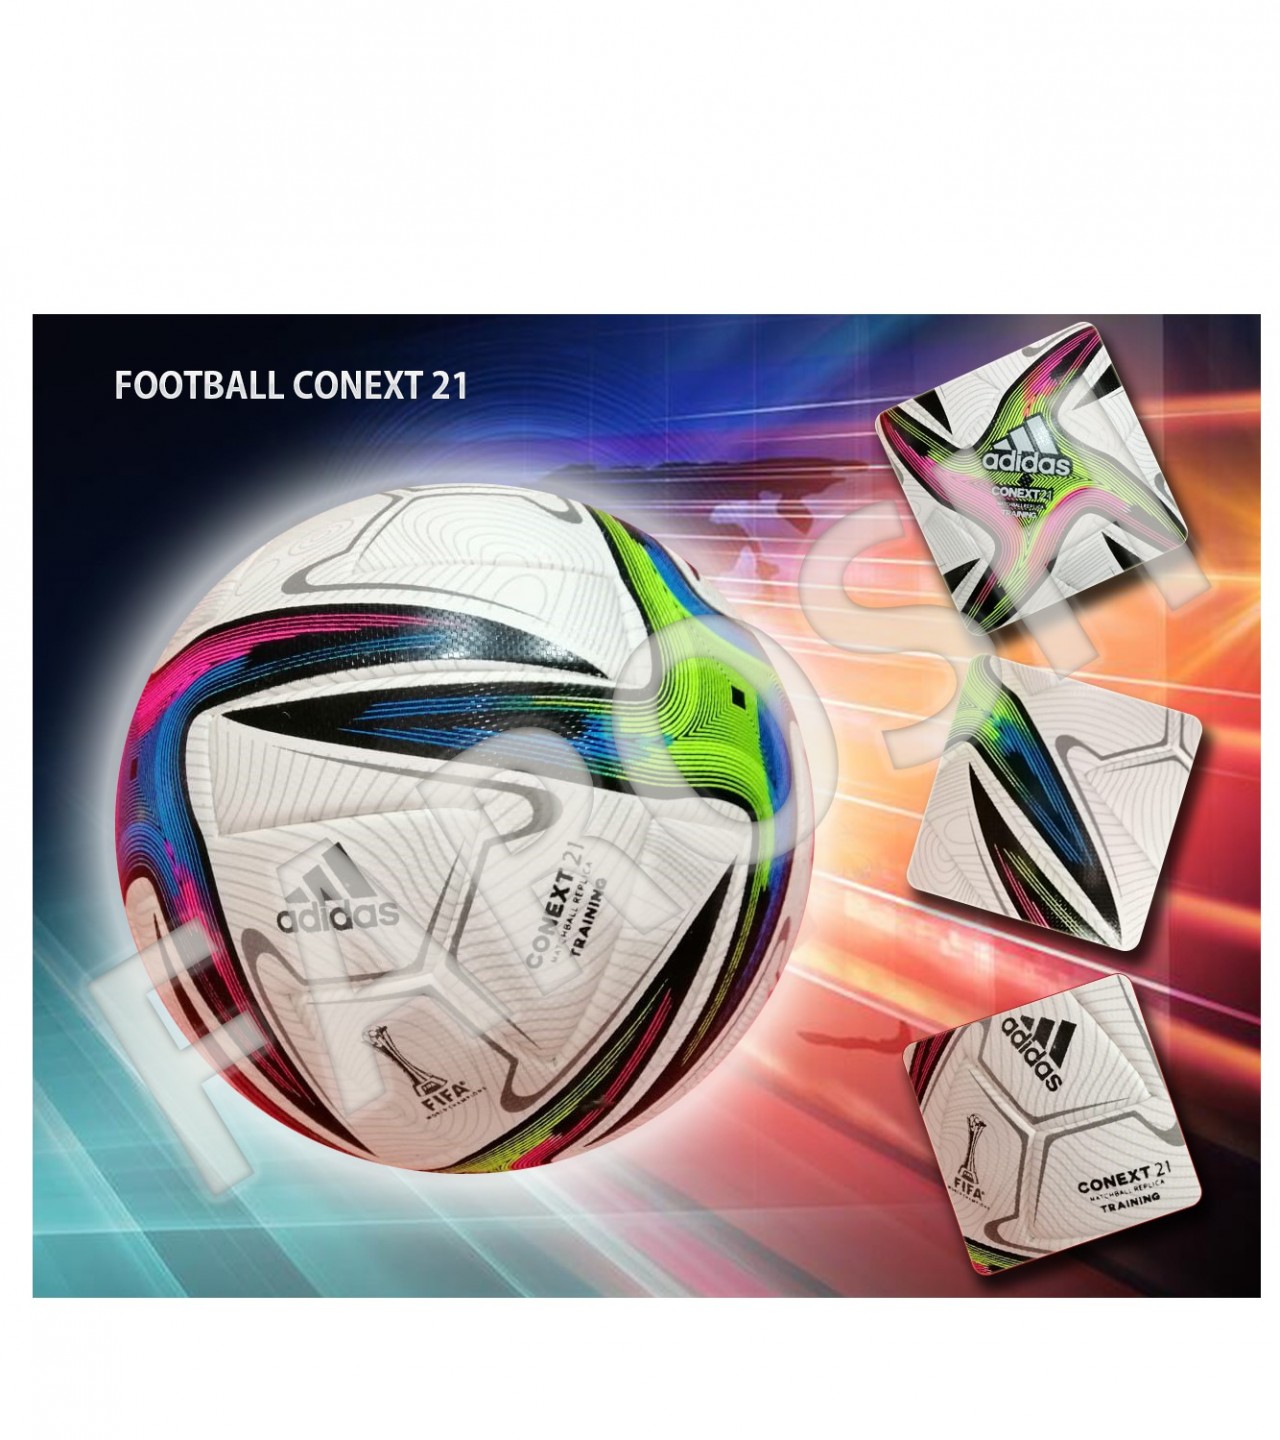 FOOTBALL Adidas Conext 21